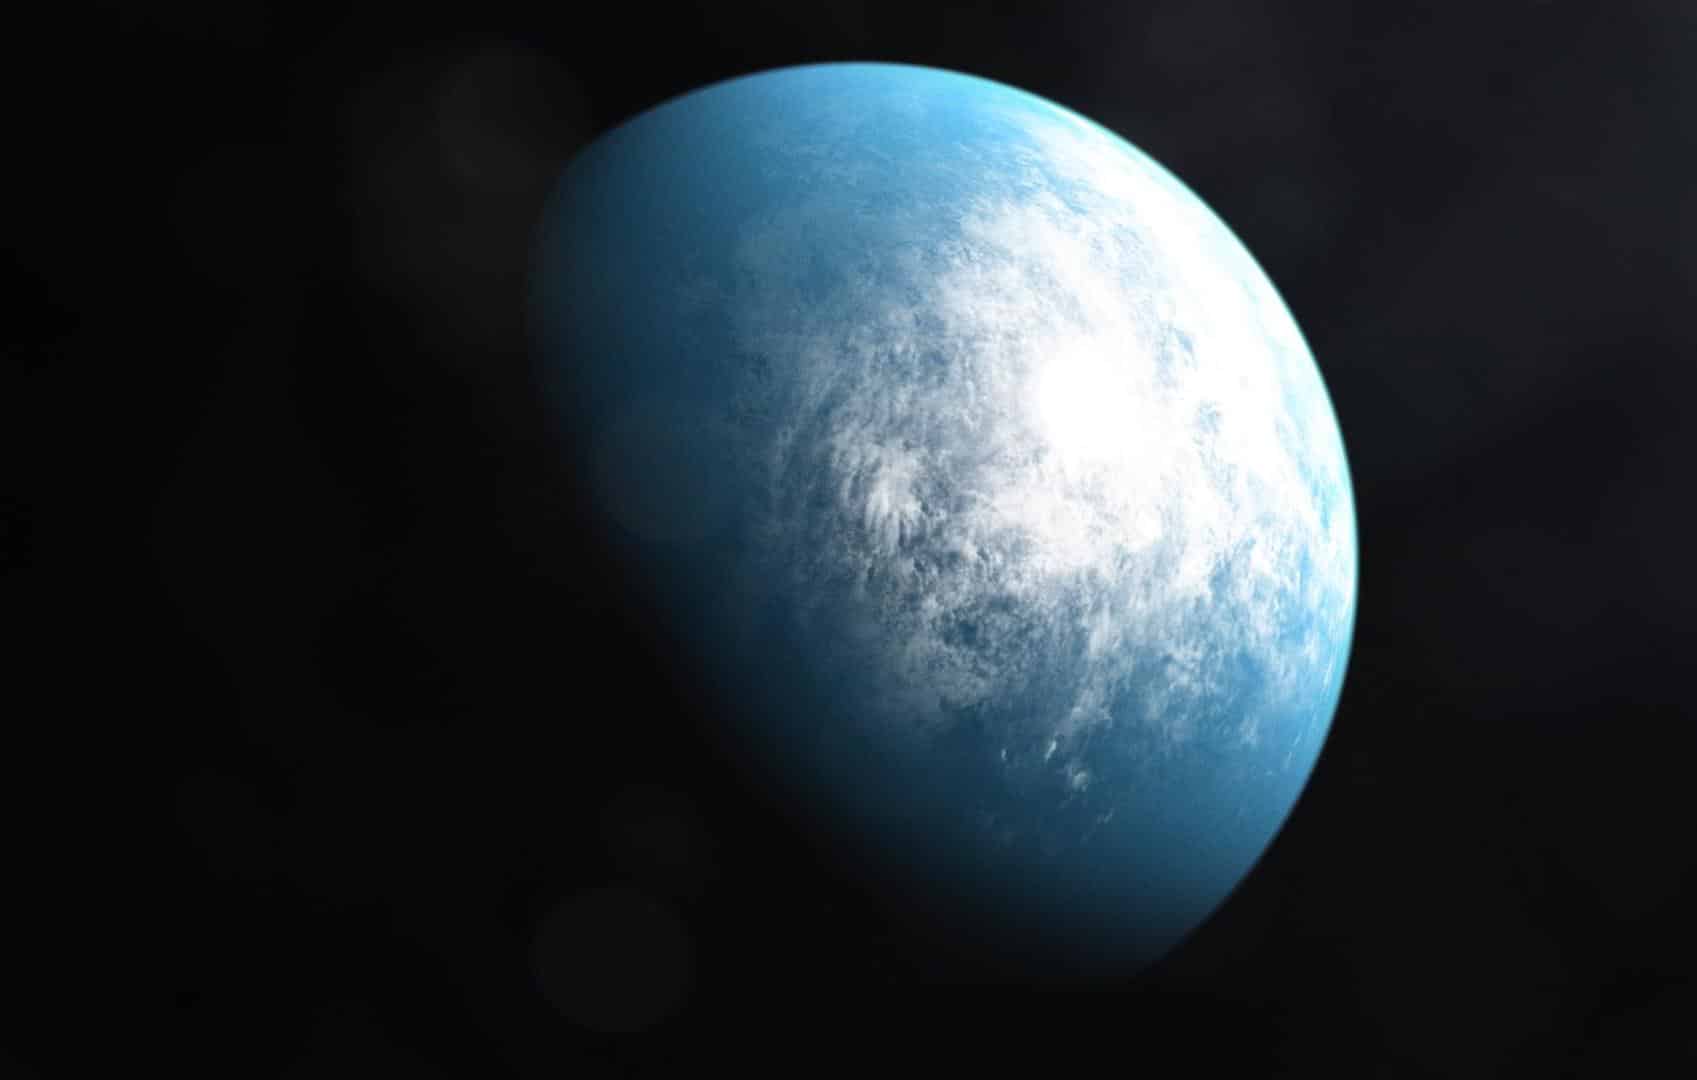 NASA descobre primeiro planeta do tamanho da Terra na zona habitável de sua estrela